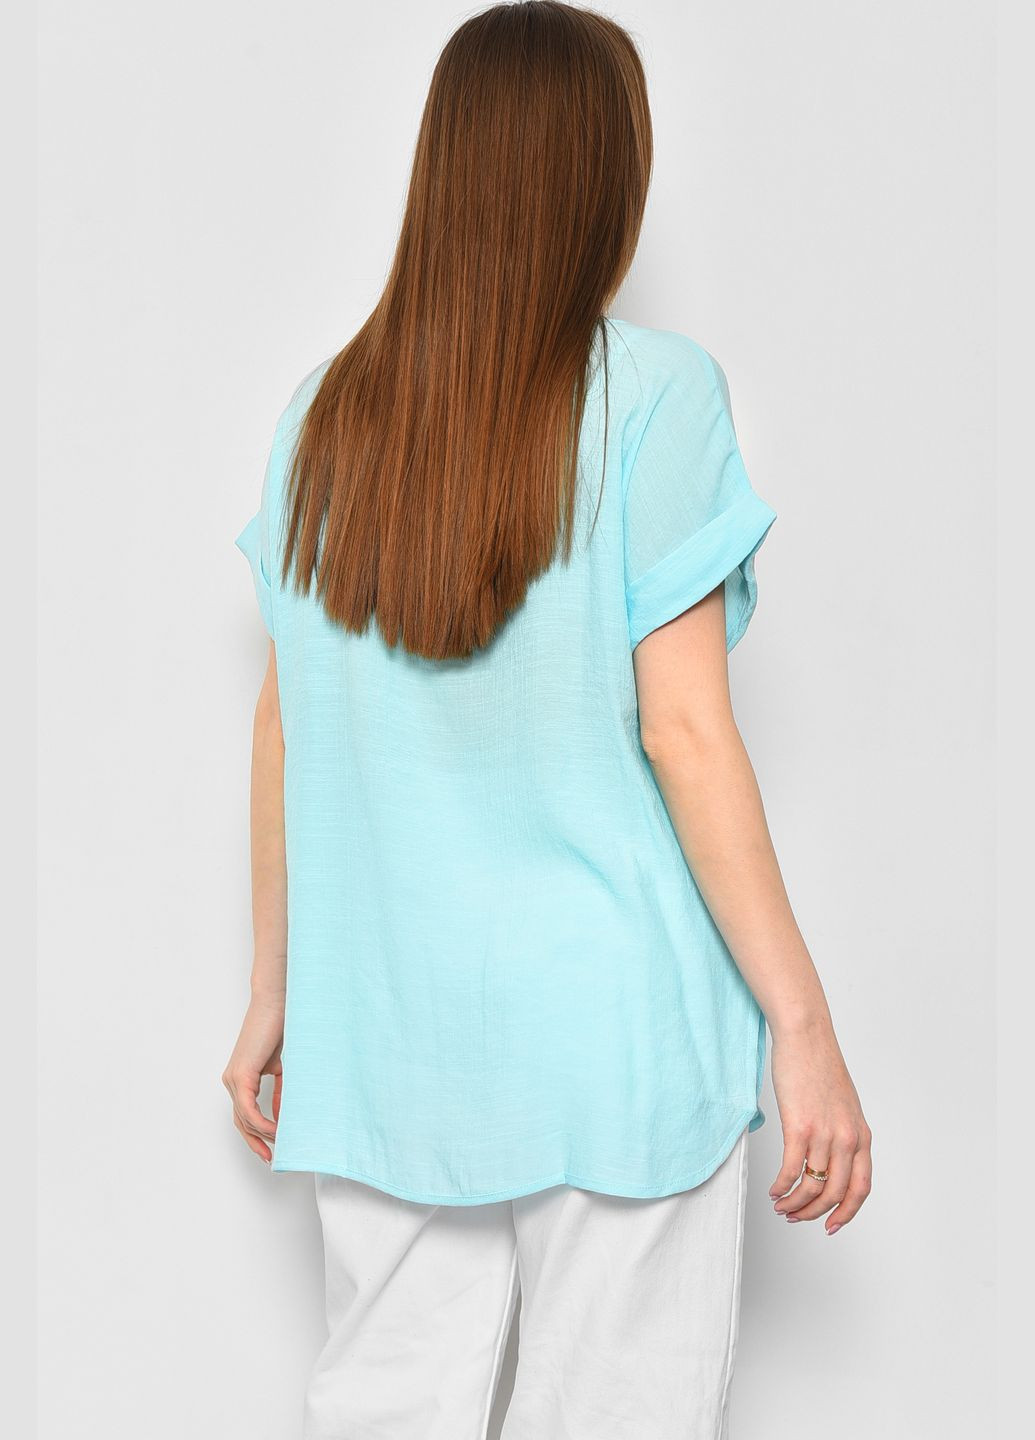 Бирюзовая летняя футболка женская полубатальная бирюзового цвета Let's Shop